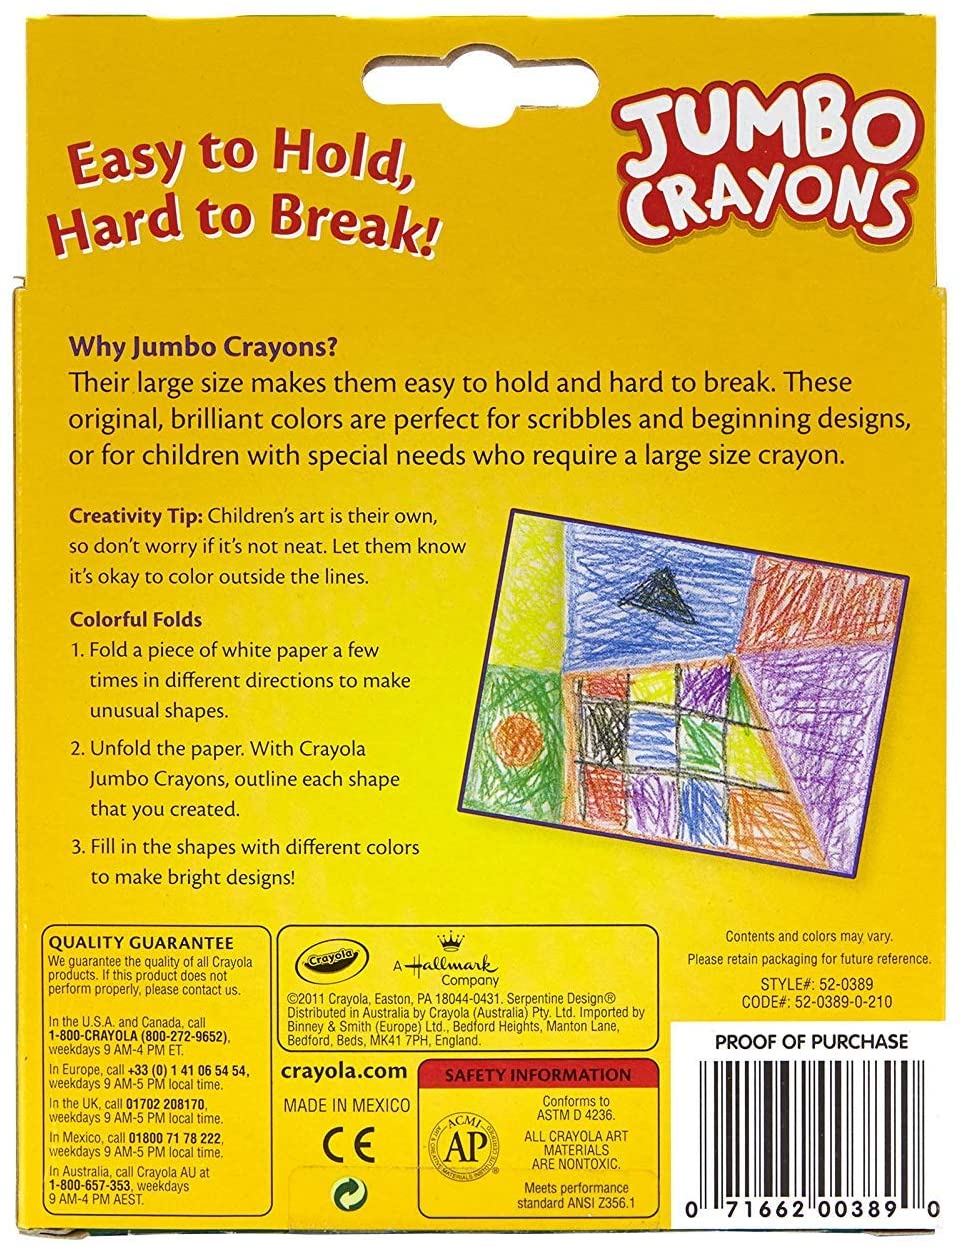 Crayola Jumbo Crayons 8 Count